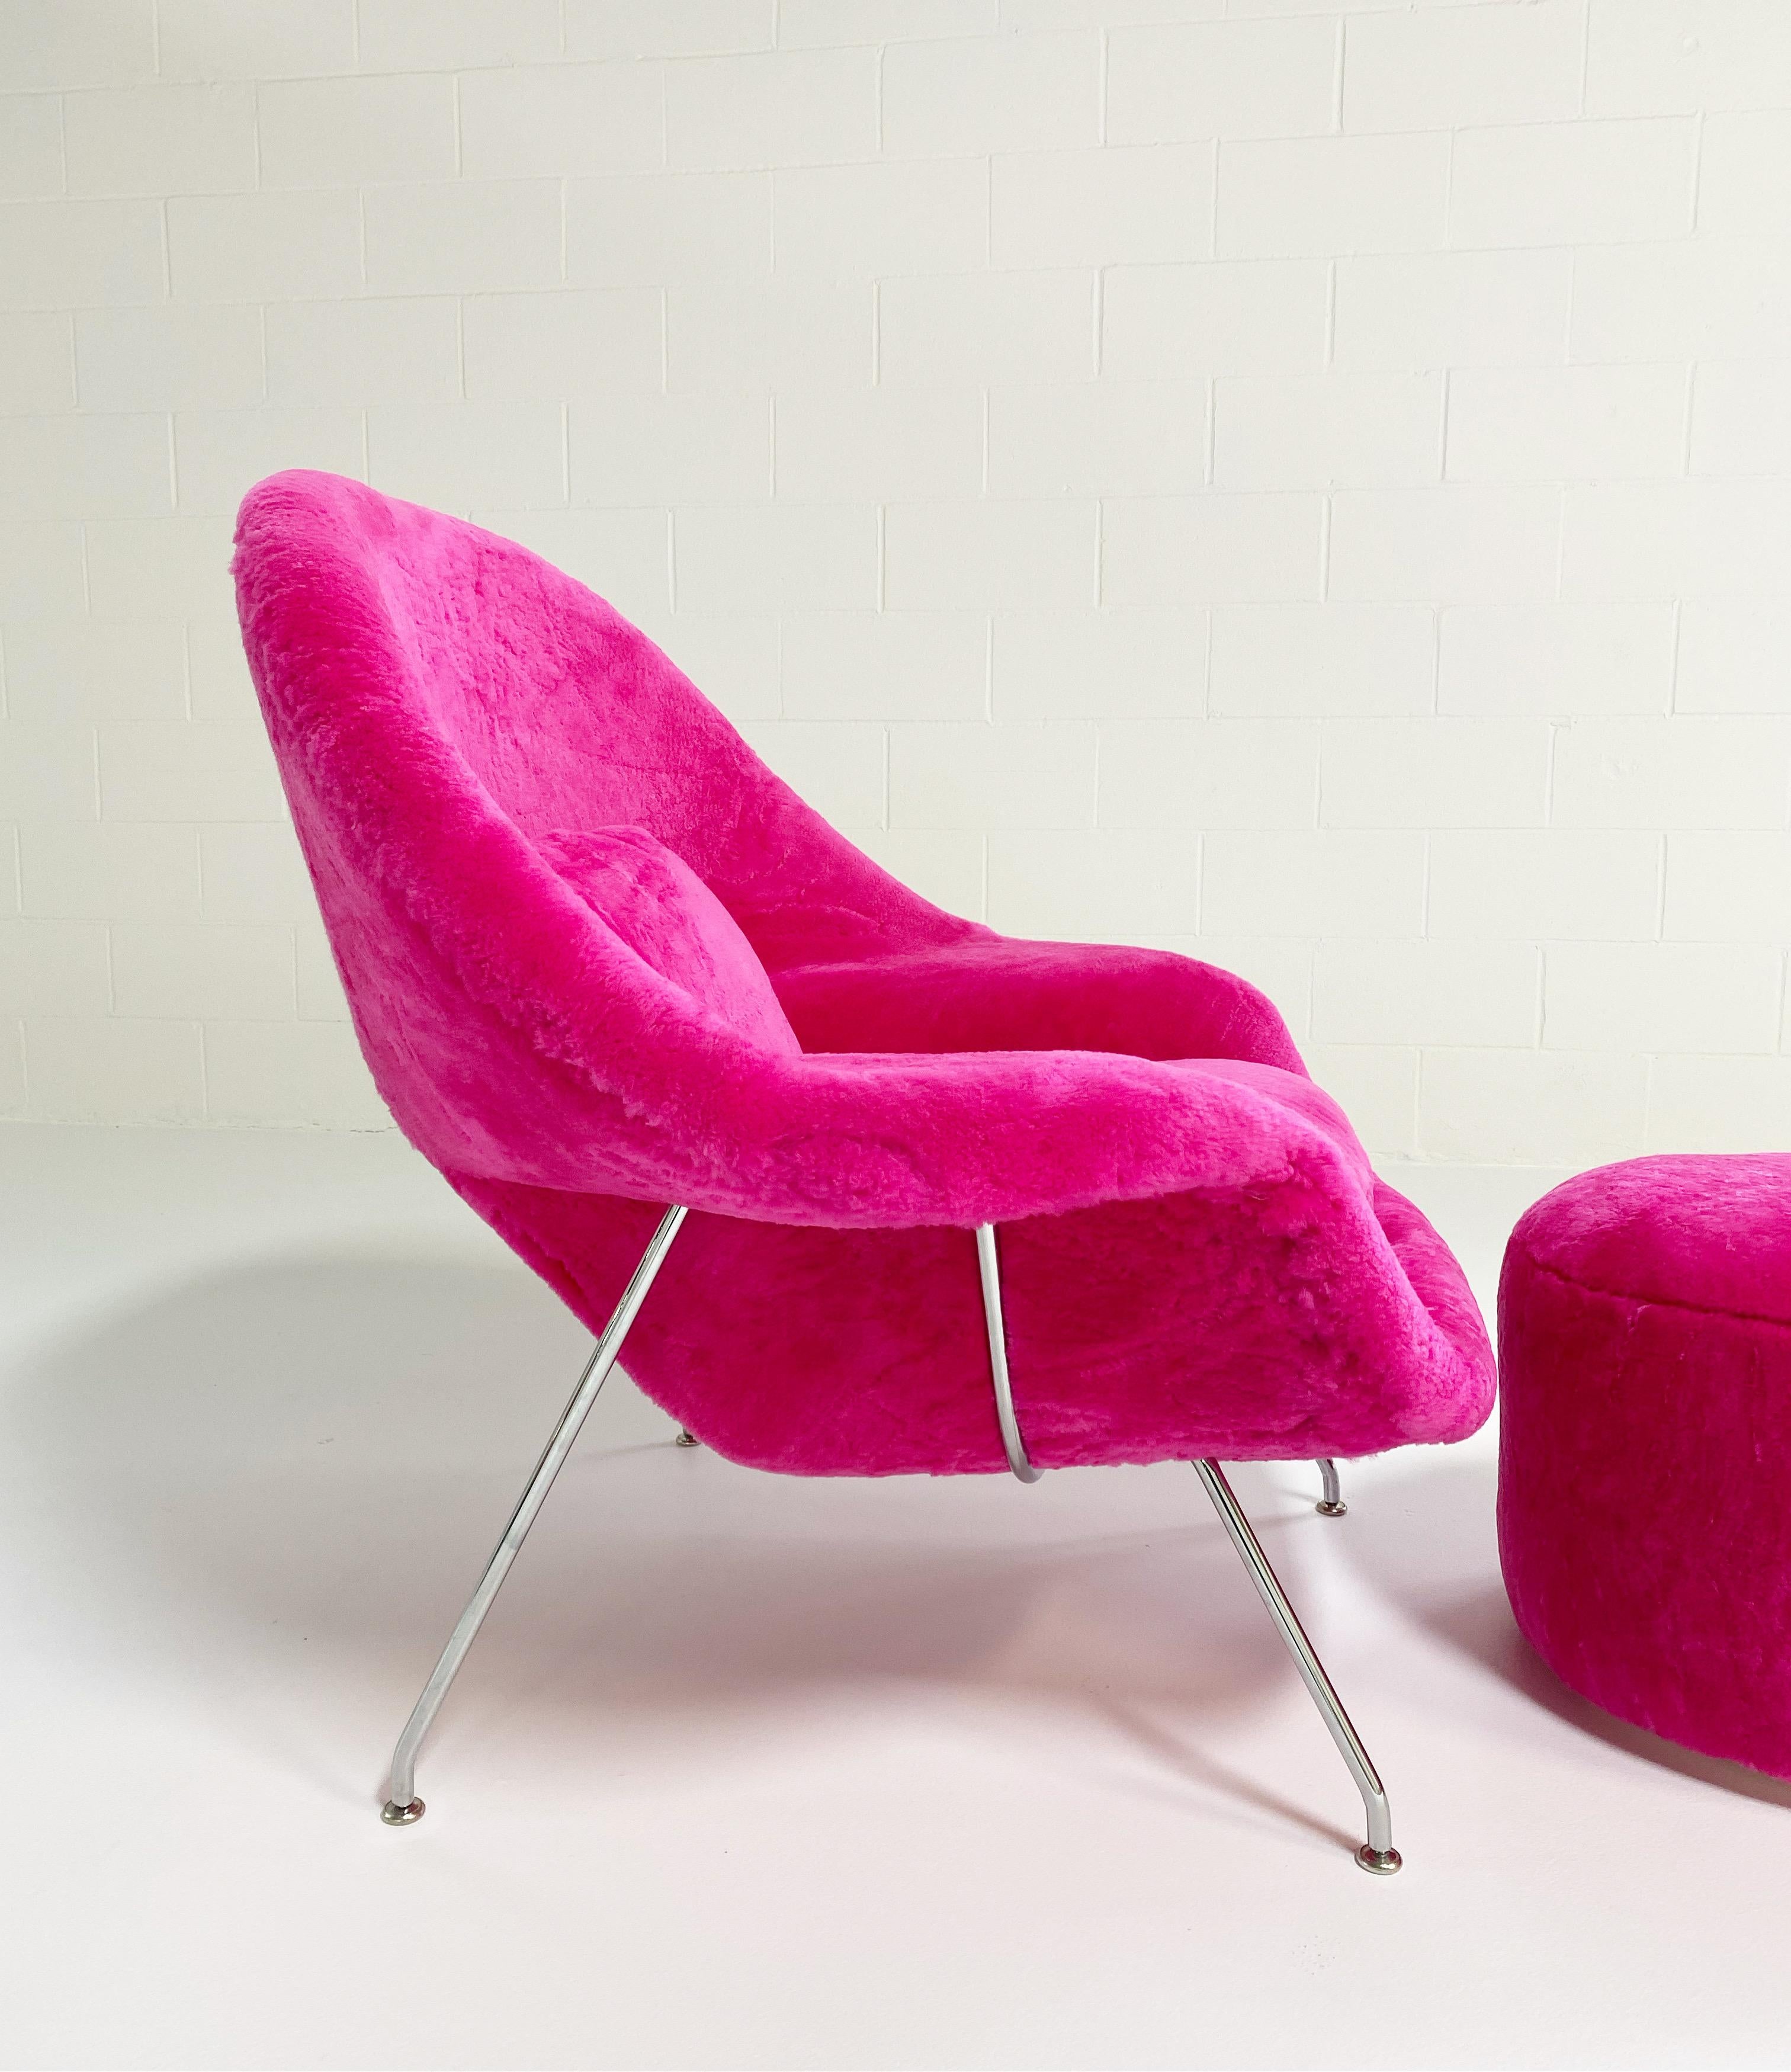 Un des favoris de l'équipe de conception de Forsyth !

Nous avons une incroyable collection de chaises vintage et d'icônes du design qui attendent une nouvelle vie. Nos chaises utérines recyclées font partie de nos modèles les plus populaires.